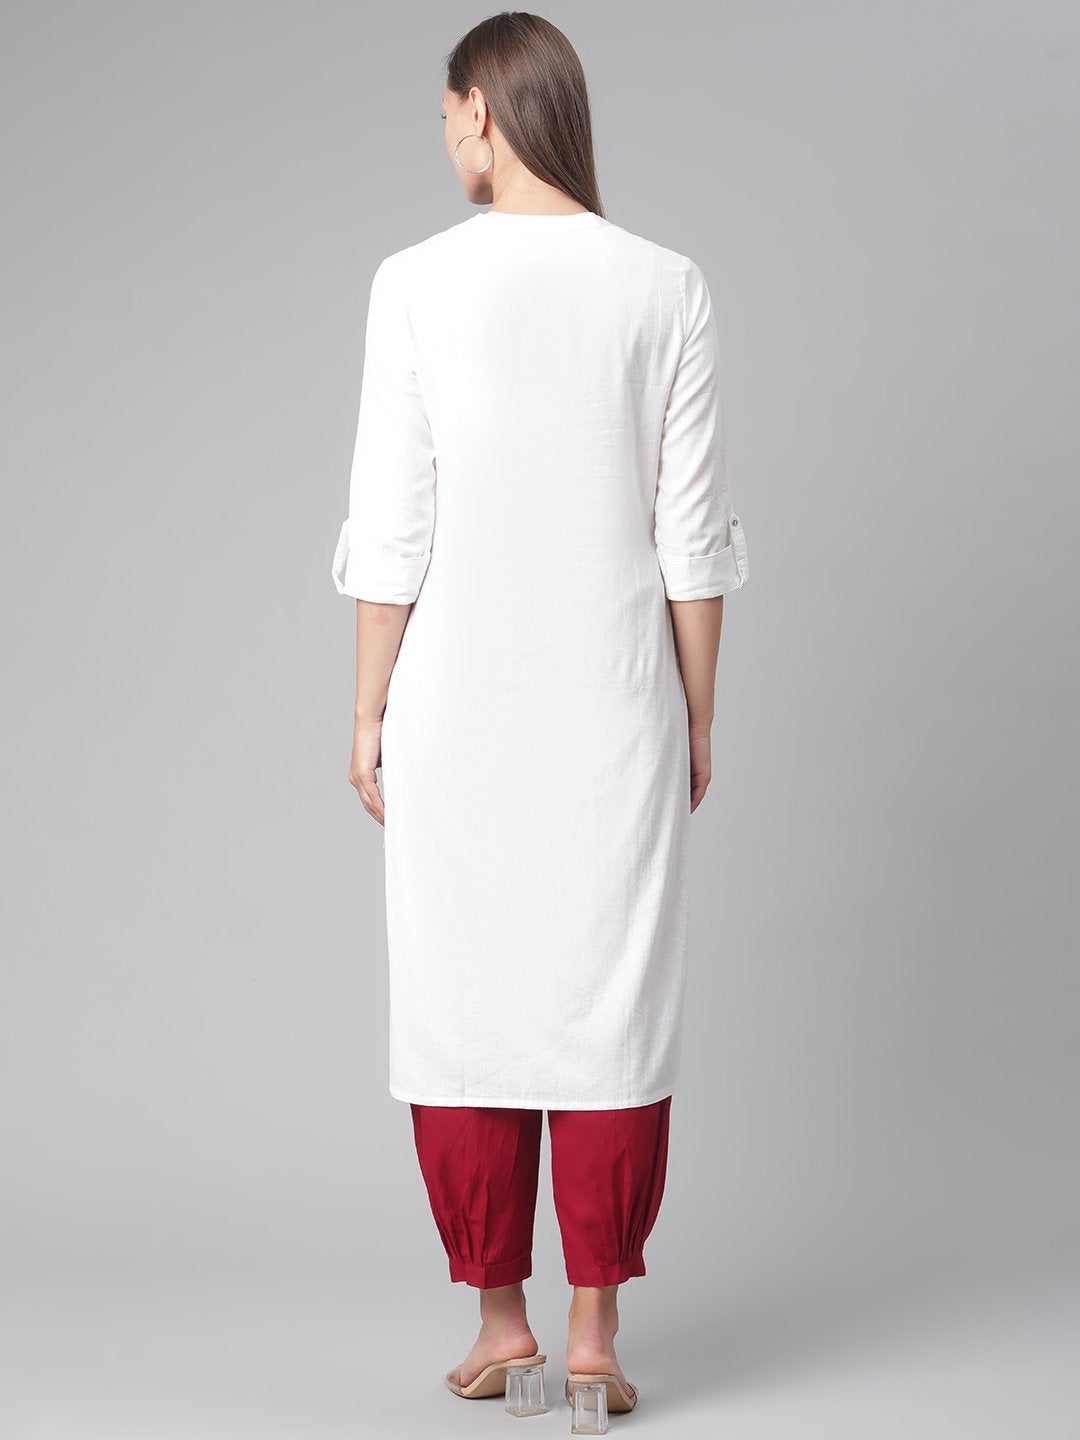 Women's White Cotton Straight Kurta - Divena